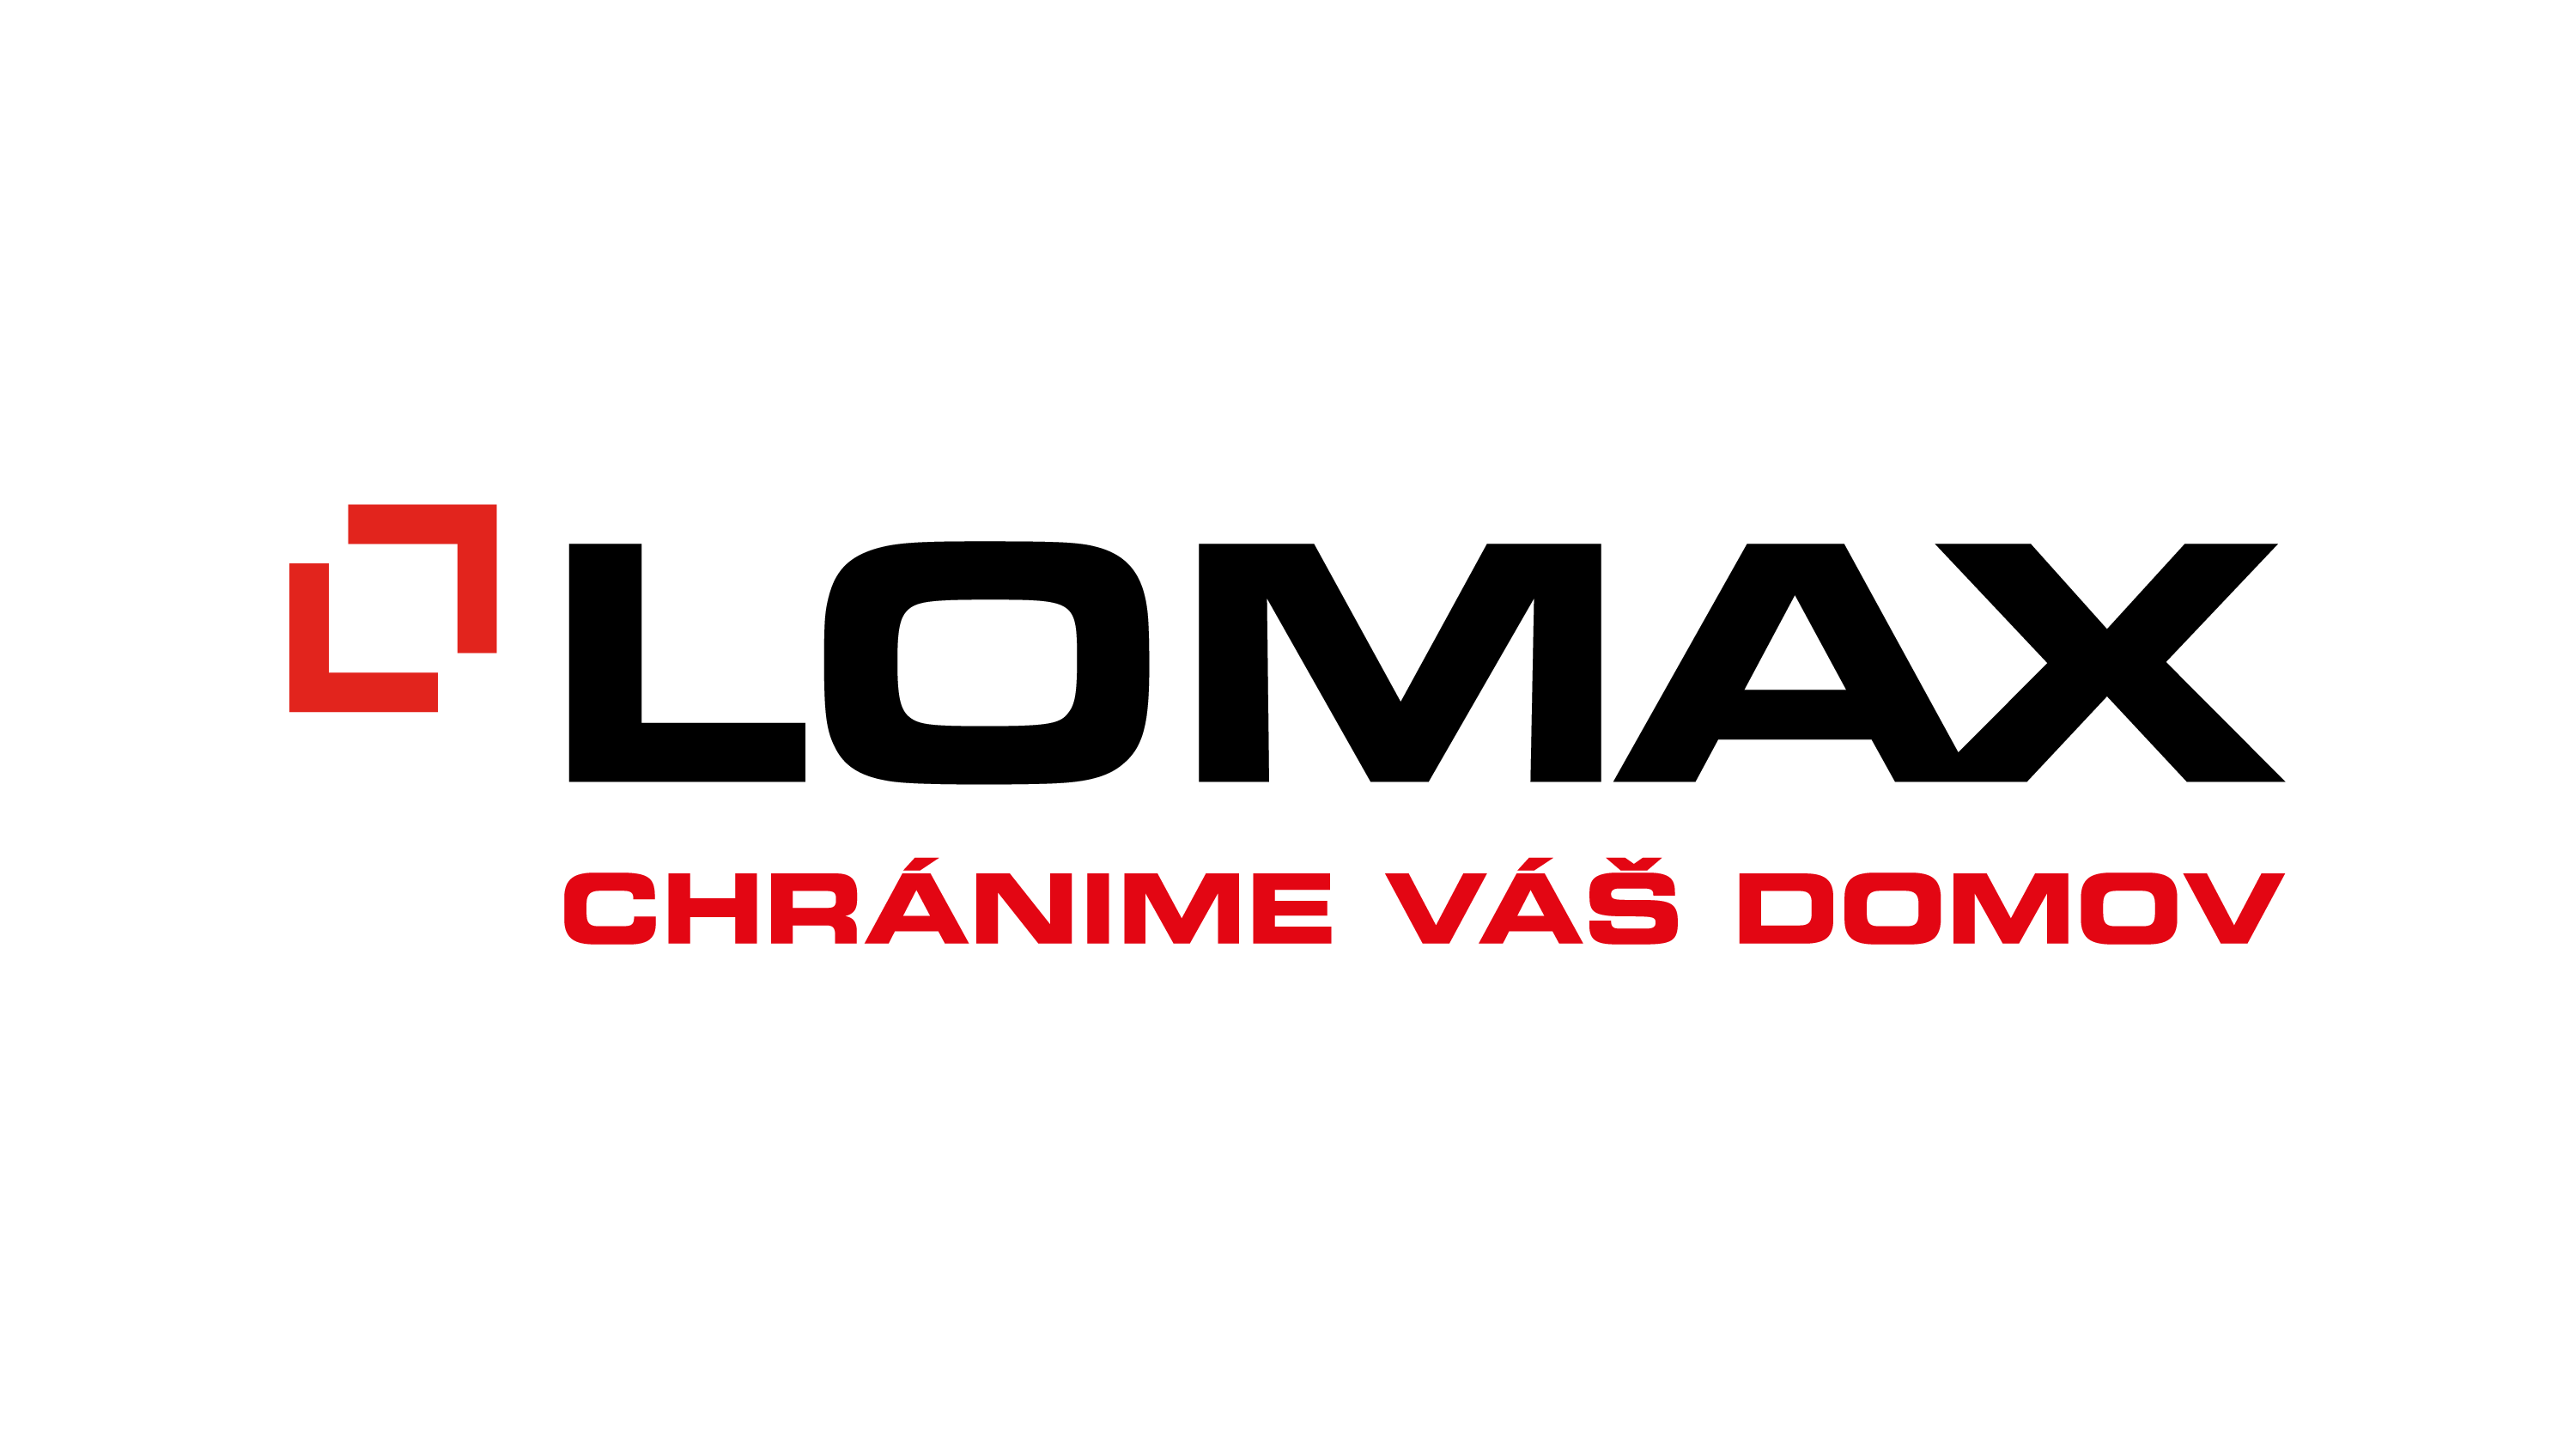 Lomax logo a claim